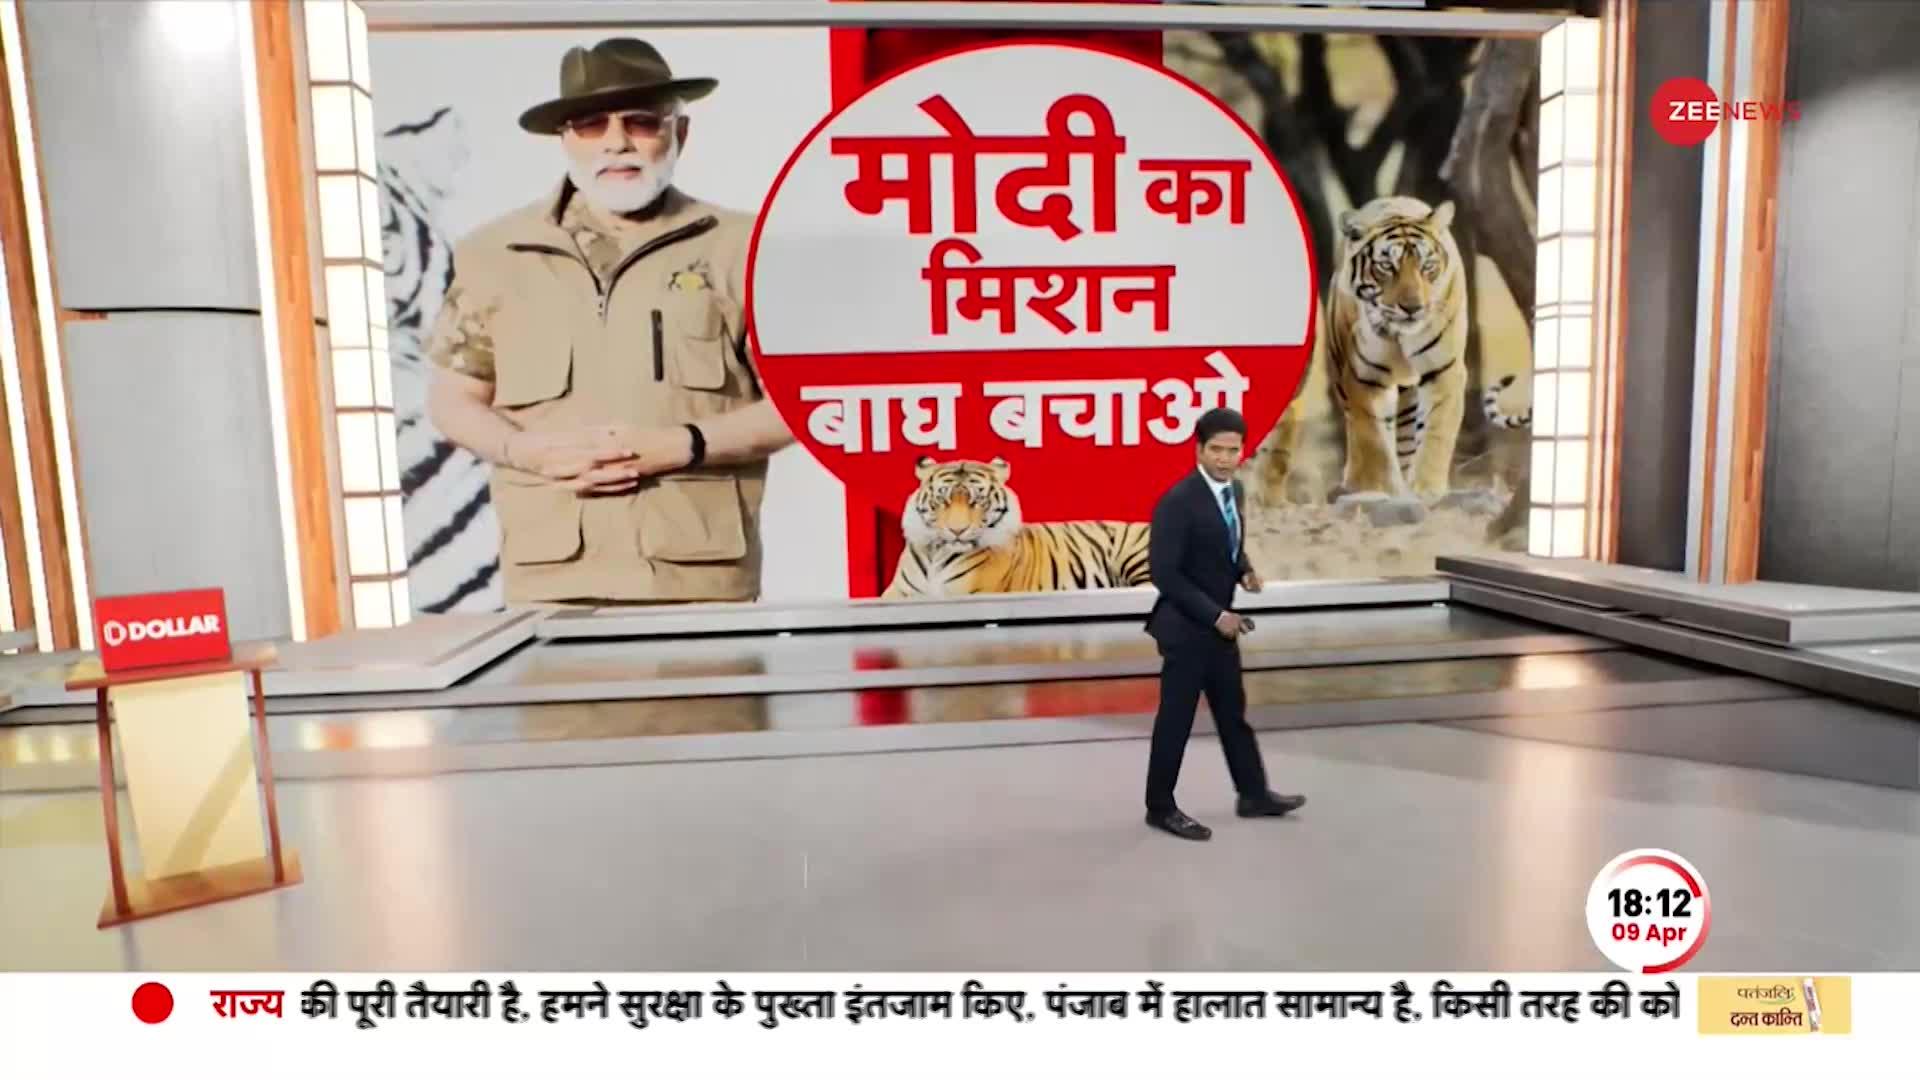 Deshhit: अमृतकाल का 'प्रोजेक्ट टाइगर', देश में बढ़ गई बाघों की संख्या